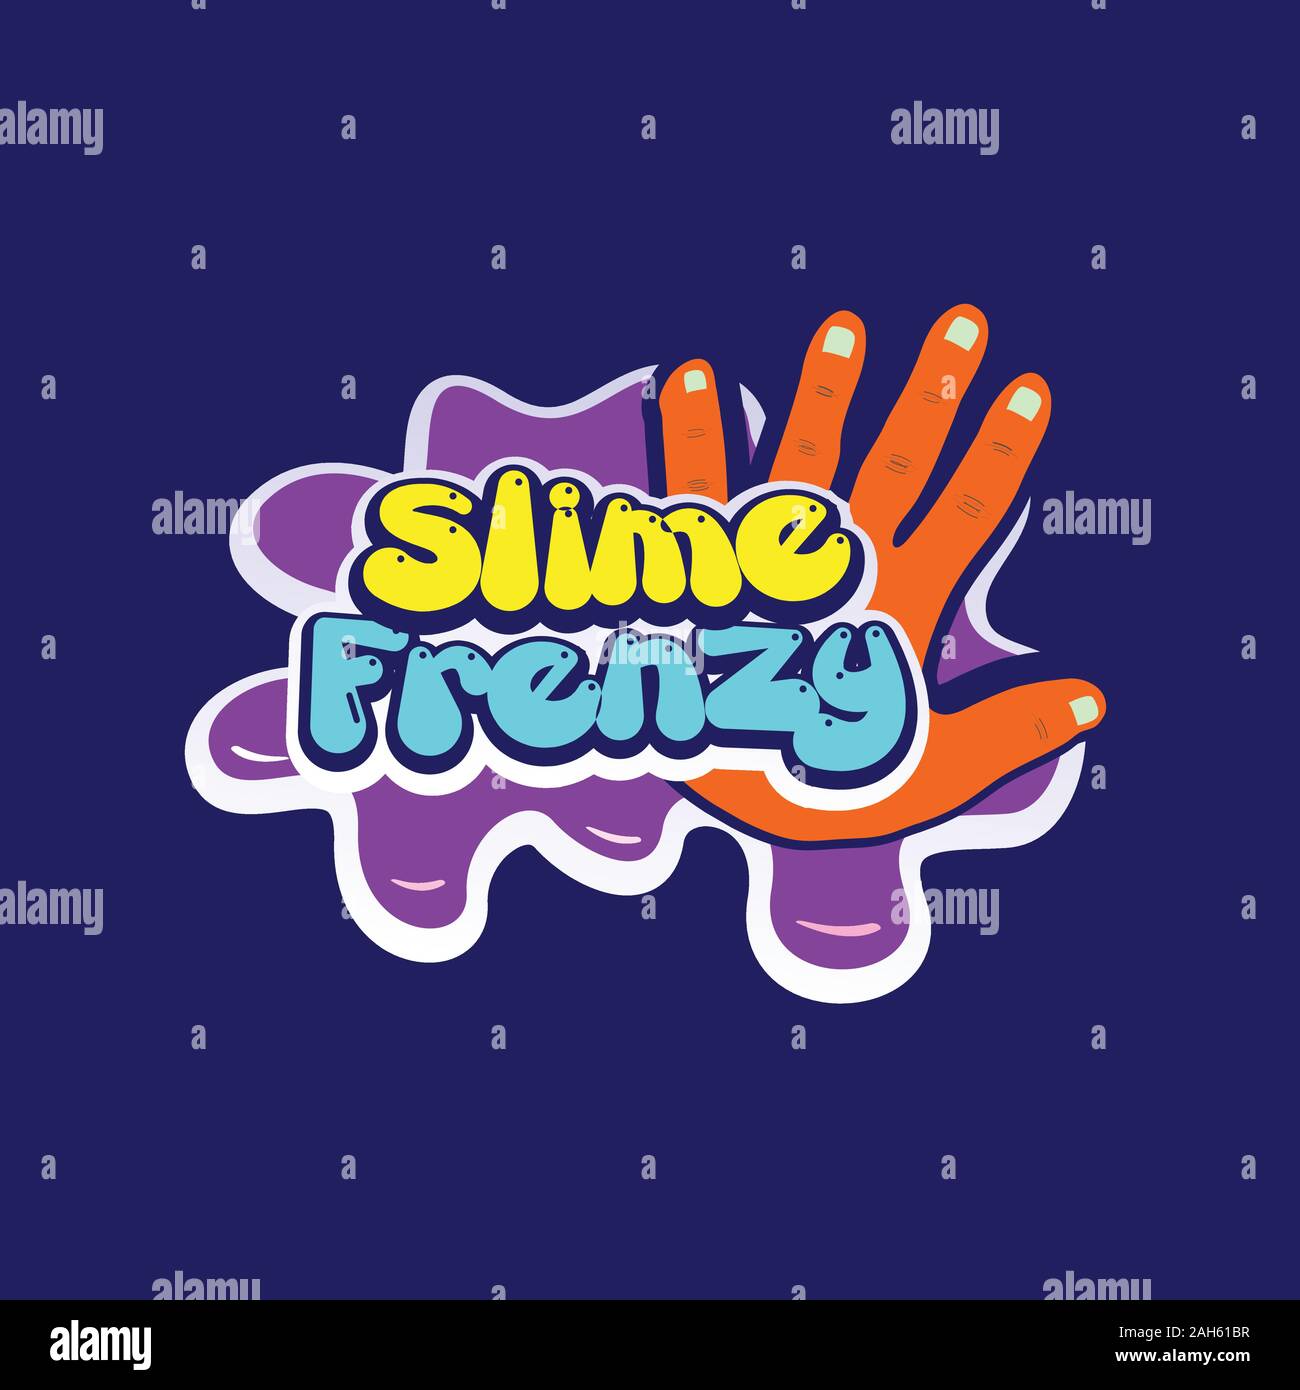 Schleim Frenzy Logo Konzept, Spaß flüssig spielen Logo Design Vorlage, Hand Element, flüssig Spielzeug, Kid Zone, Orange, Lila, Gelb, Blau, bunt Tosca Stock Vektor